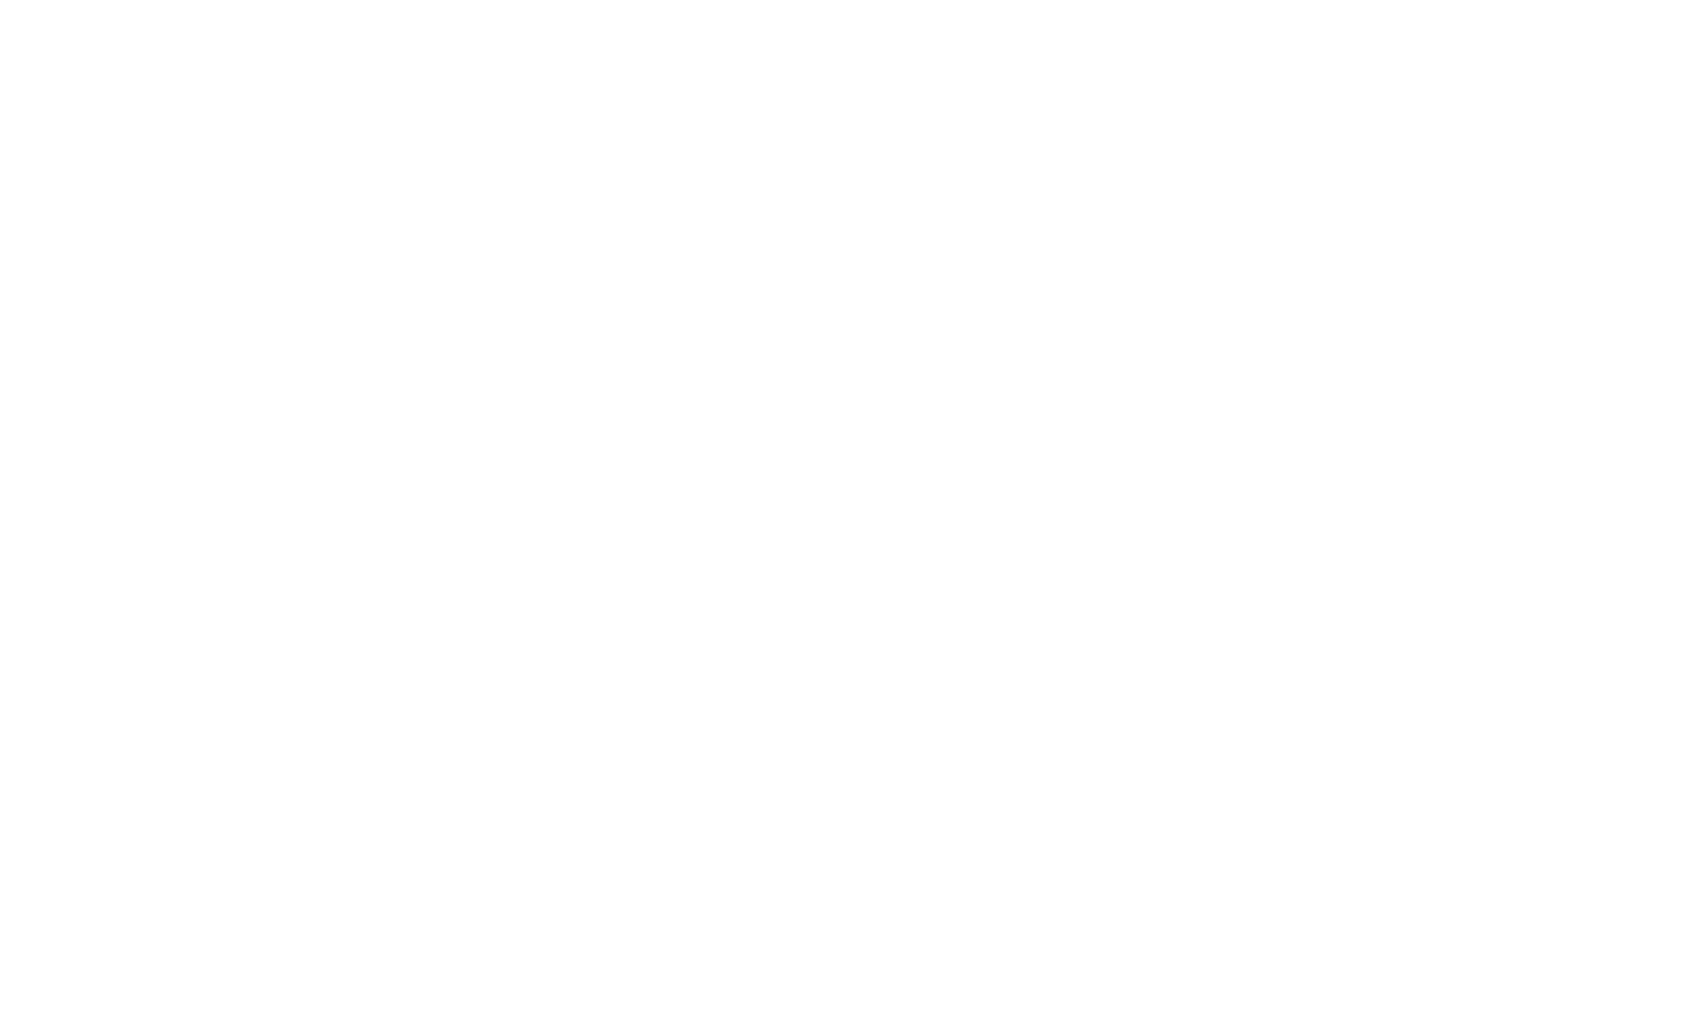 Master_ATAC19 logo_slant shapes_wht.png